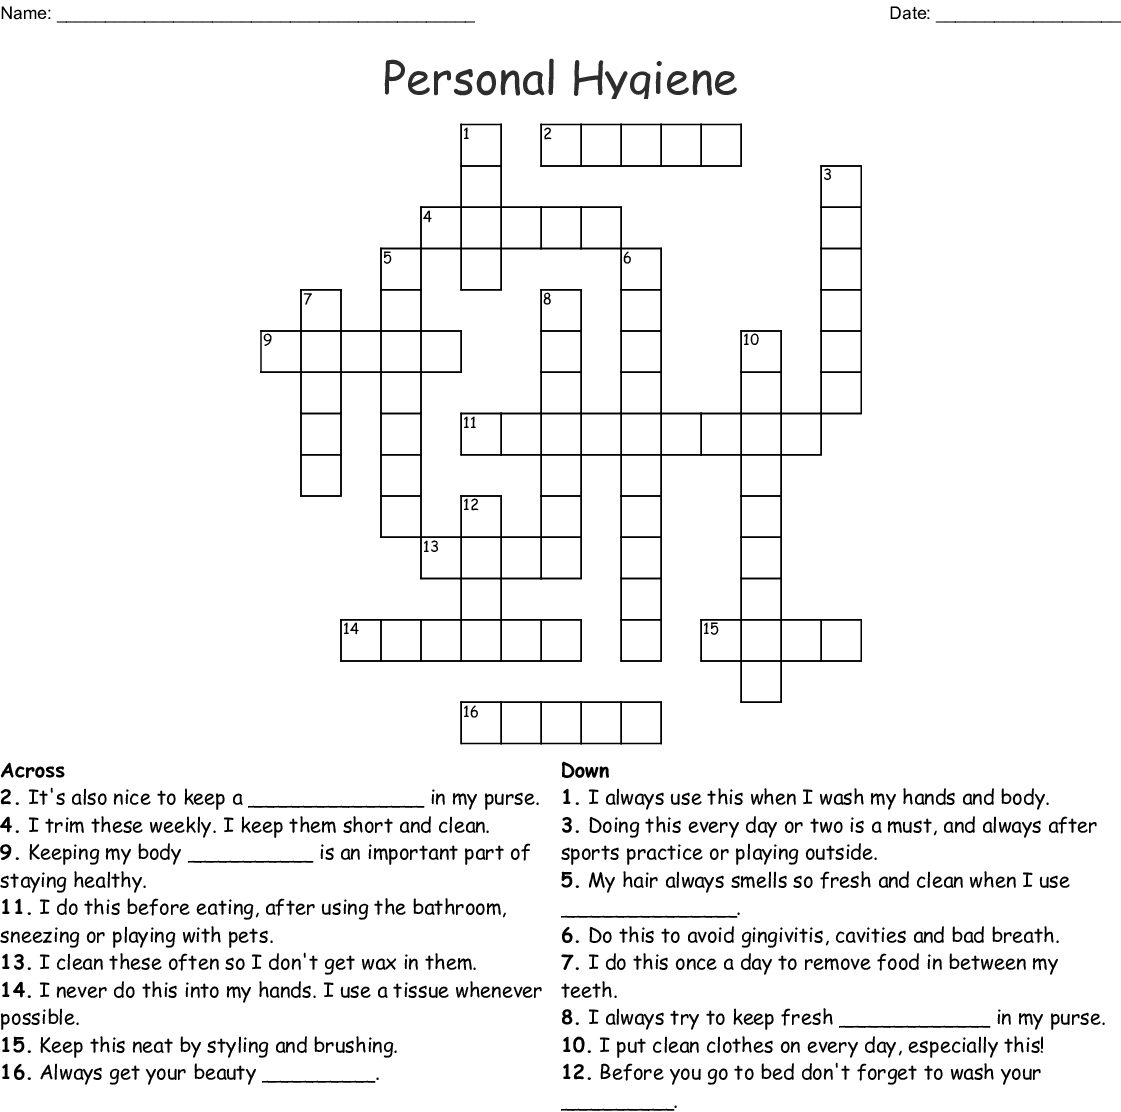 Personal Hygiene Crossword - Wordmint - Printable Personal Hygiene Crossword Puzzle